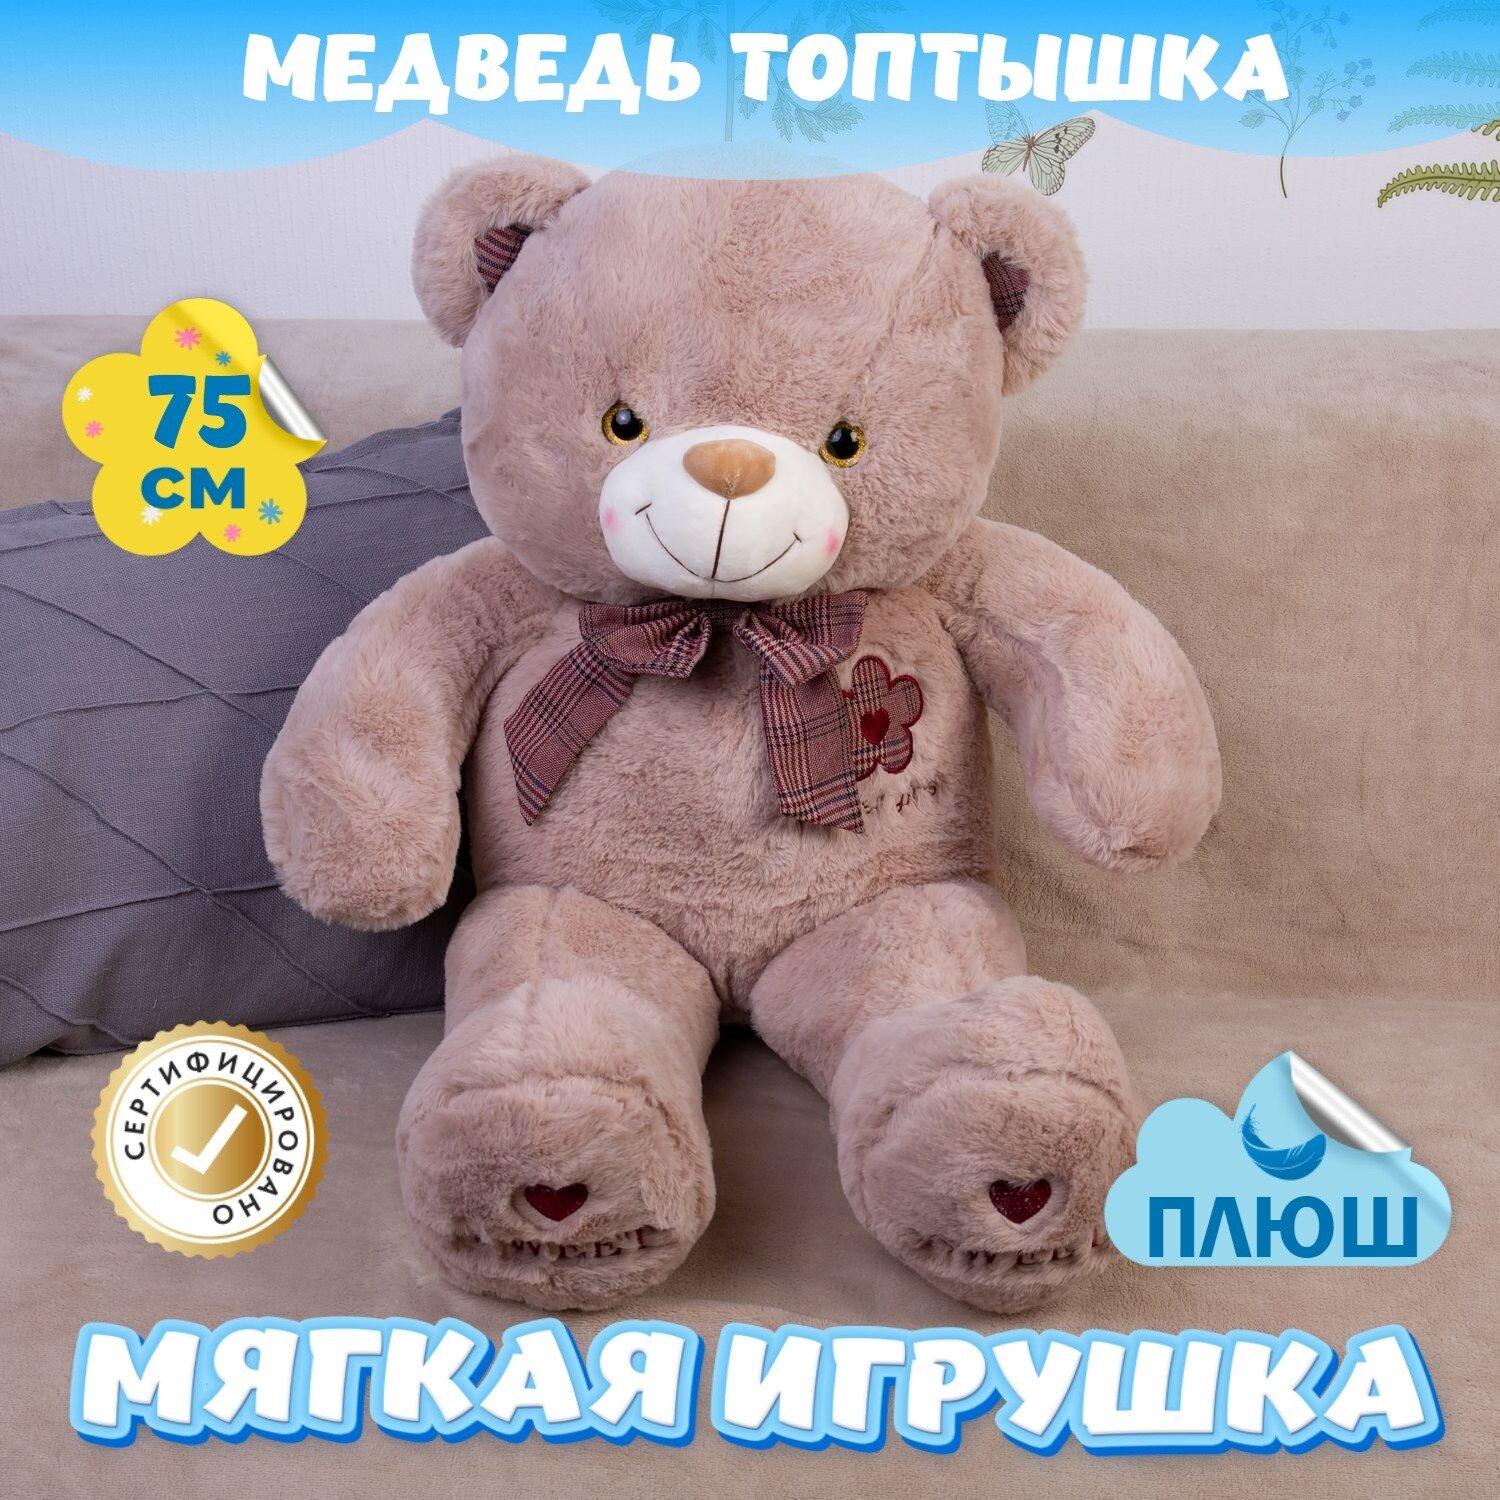 Мягкая игрушка большой Мишка Топтышка для малышей / Плюшевый Медведь для девочек и мальчиков KiDWoW хаки 75см